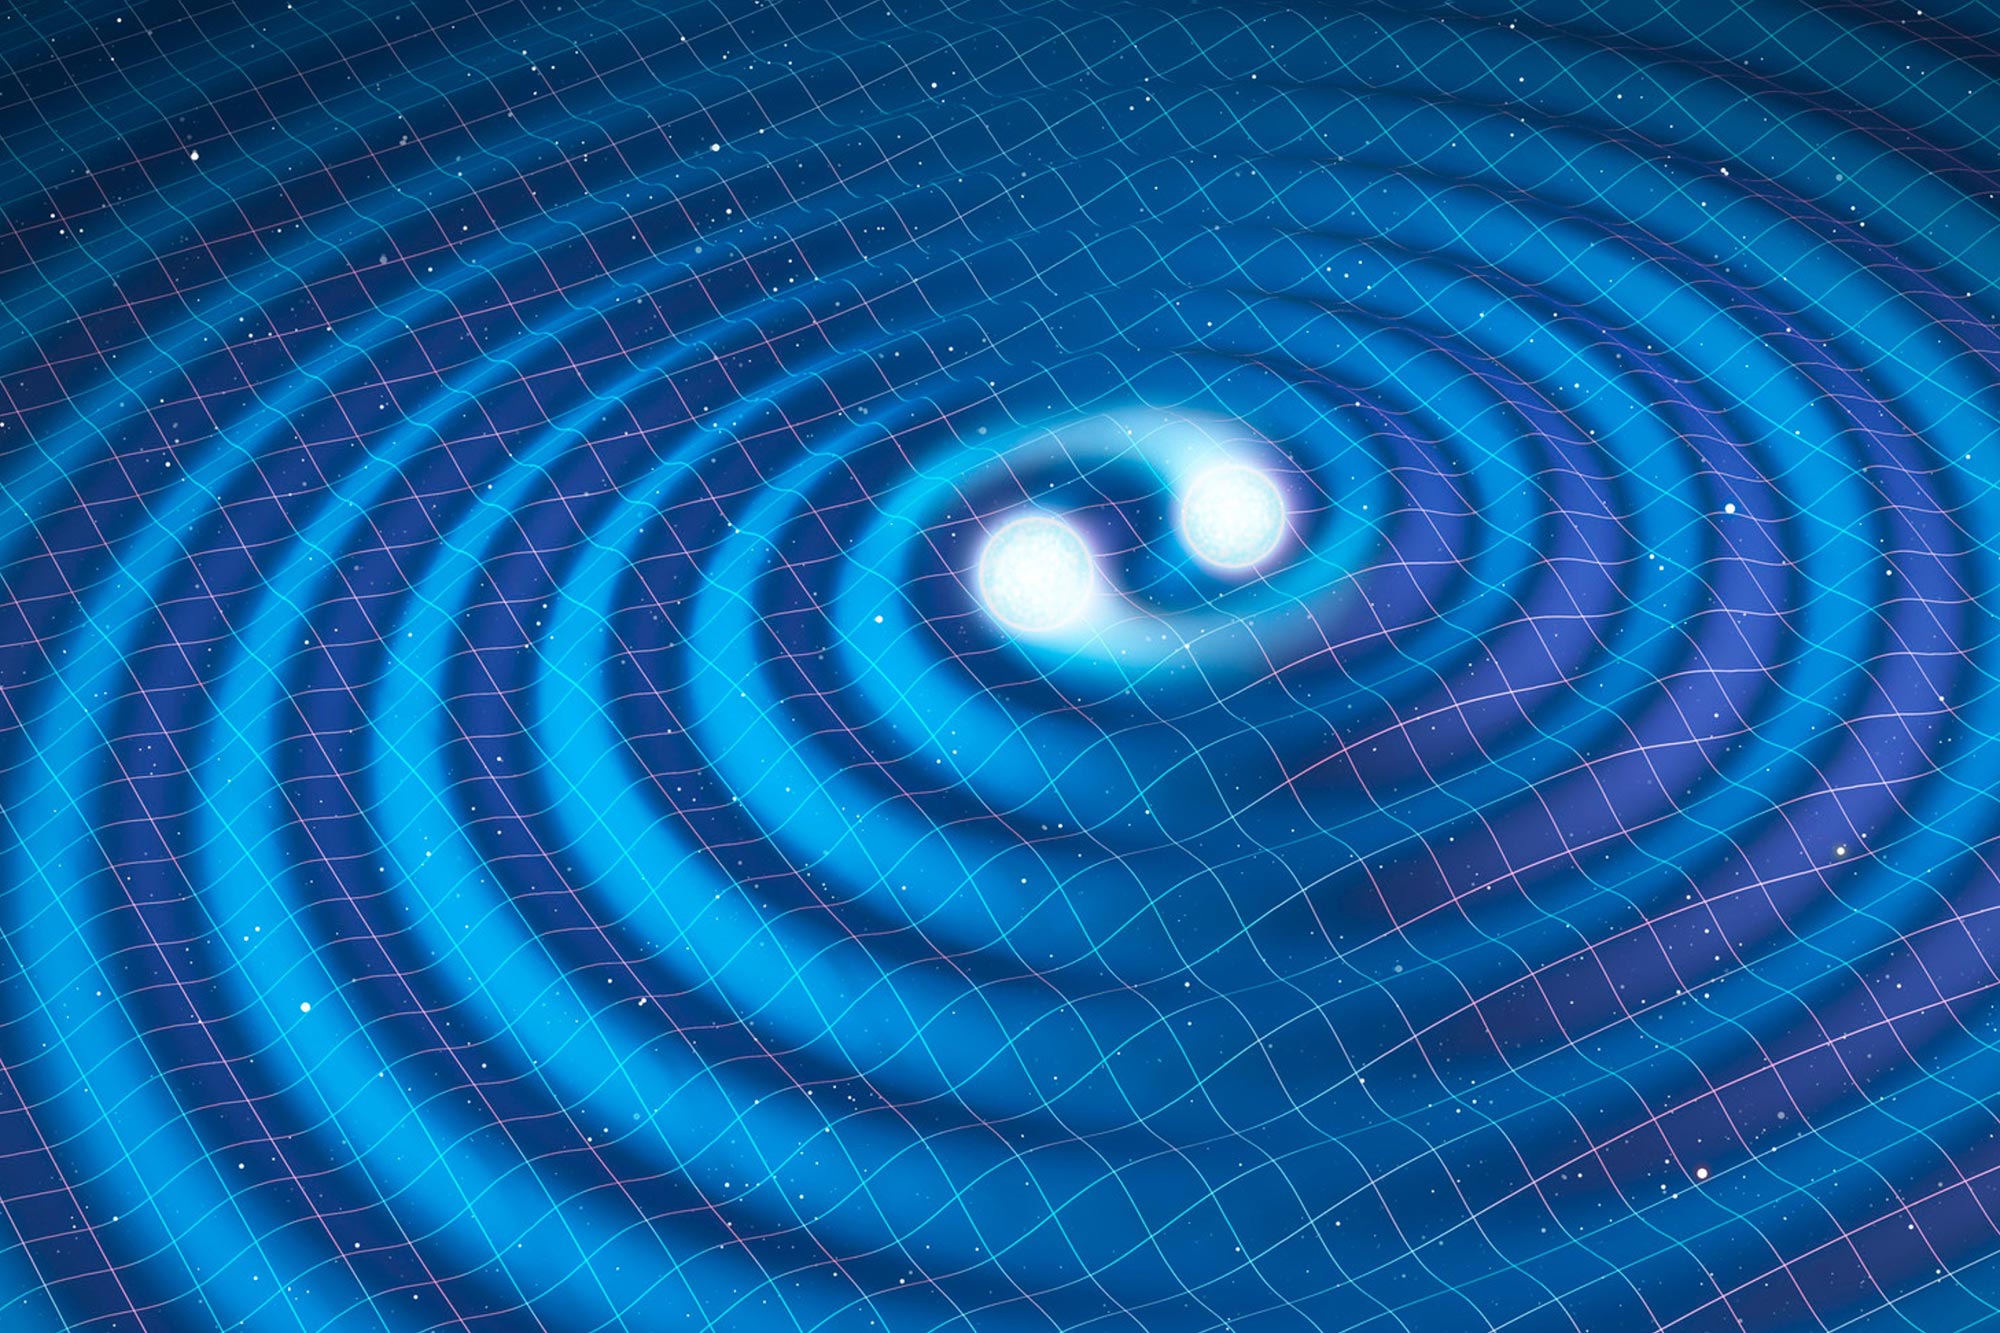 La revelación de los secretos del universo se reanuda con la detección mejorada de ondas gravitacionales